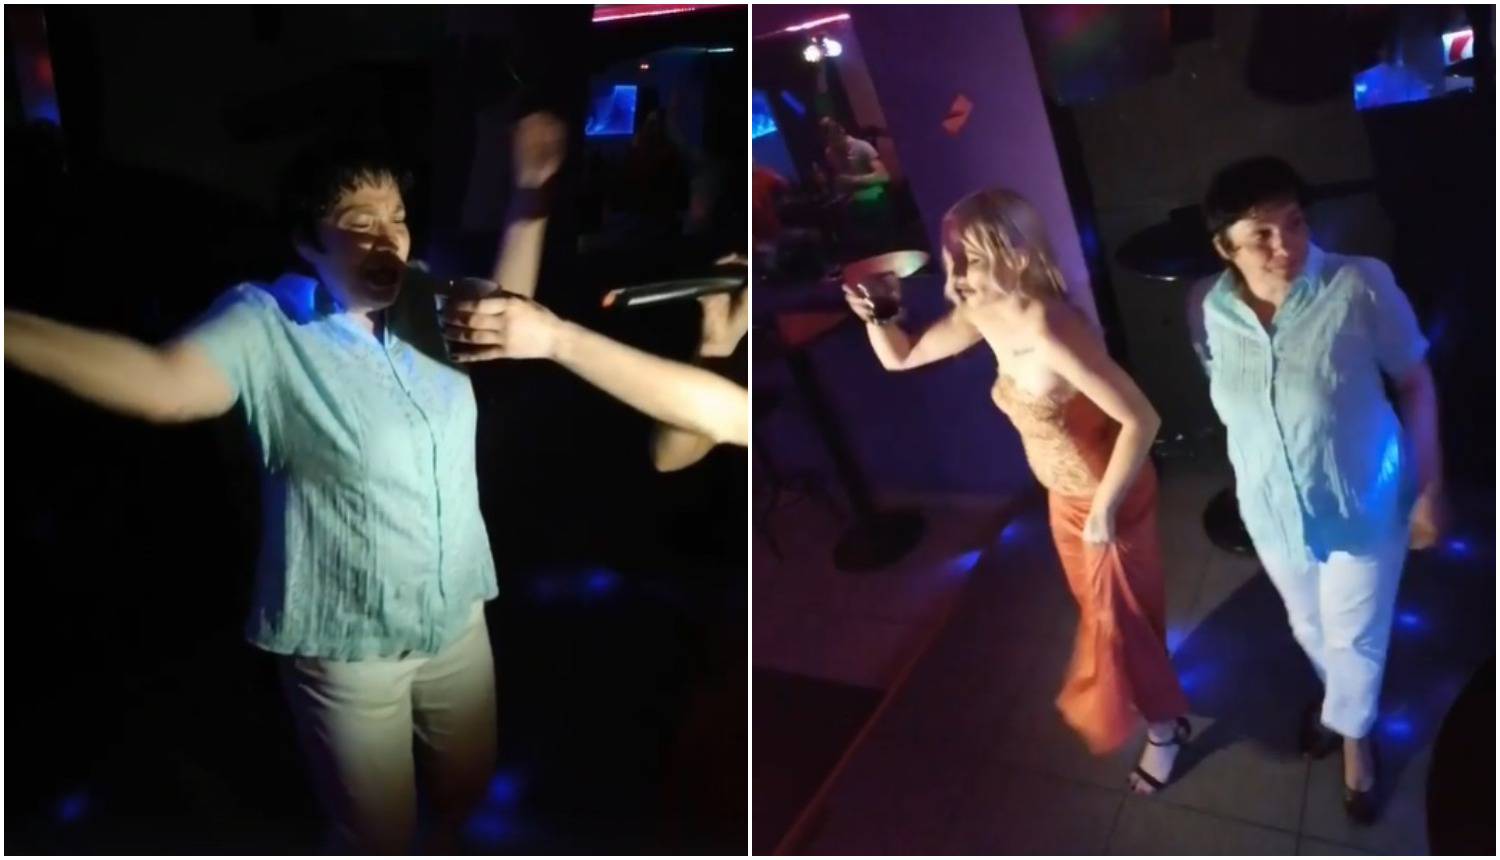 'Procurile' fotke ludog provoda: Bahra i Marijana se 'razbacale' u klubu i pjevale narodnjake